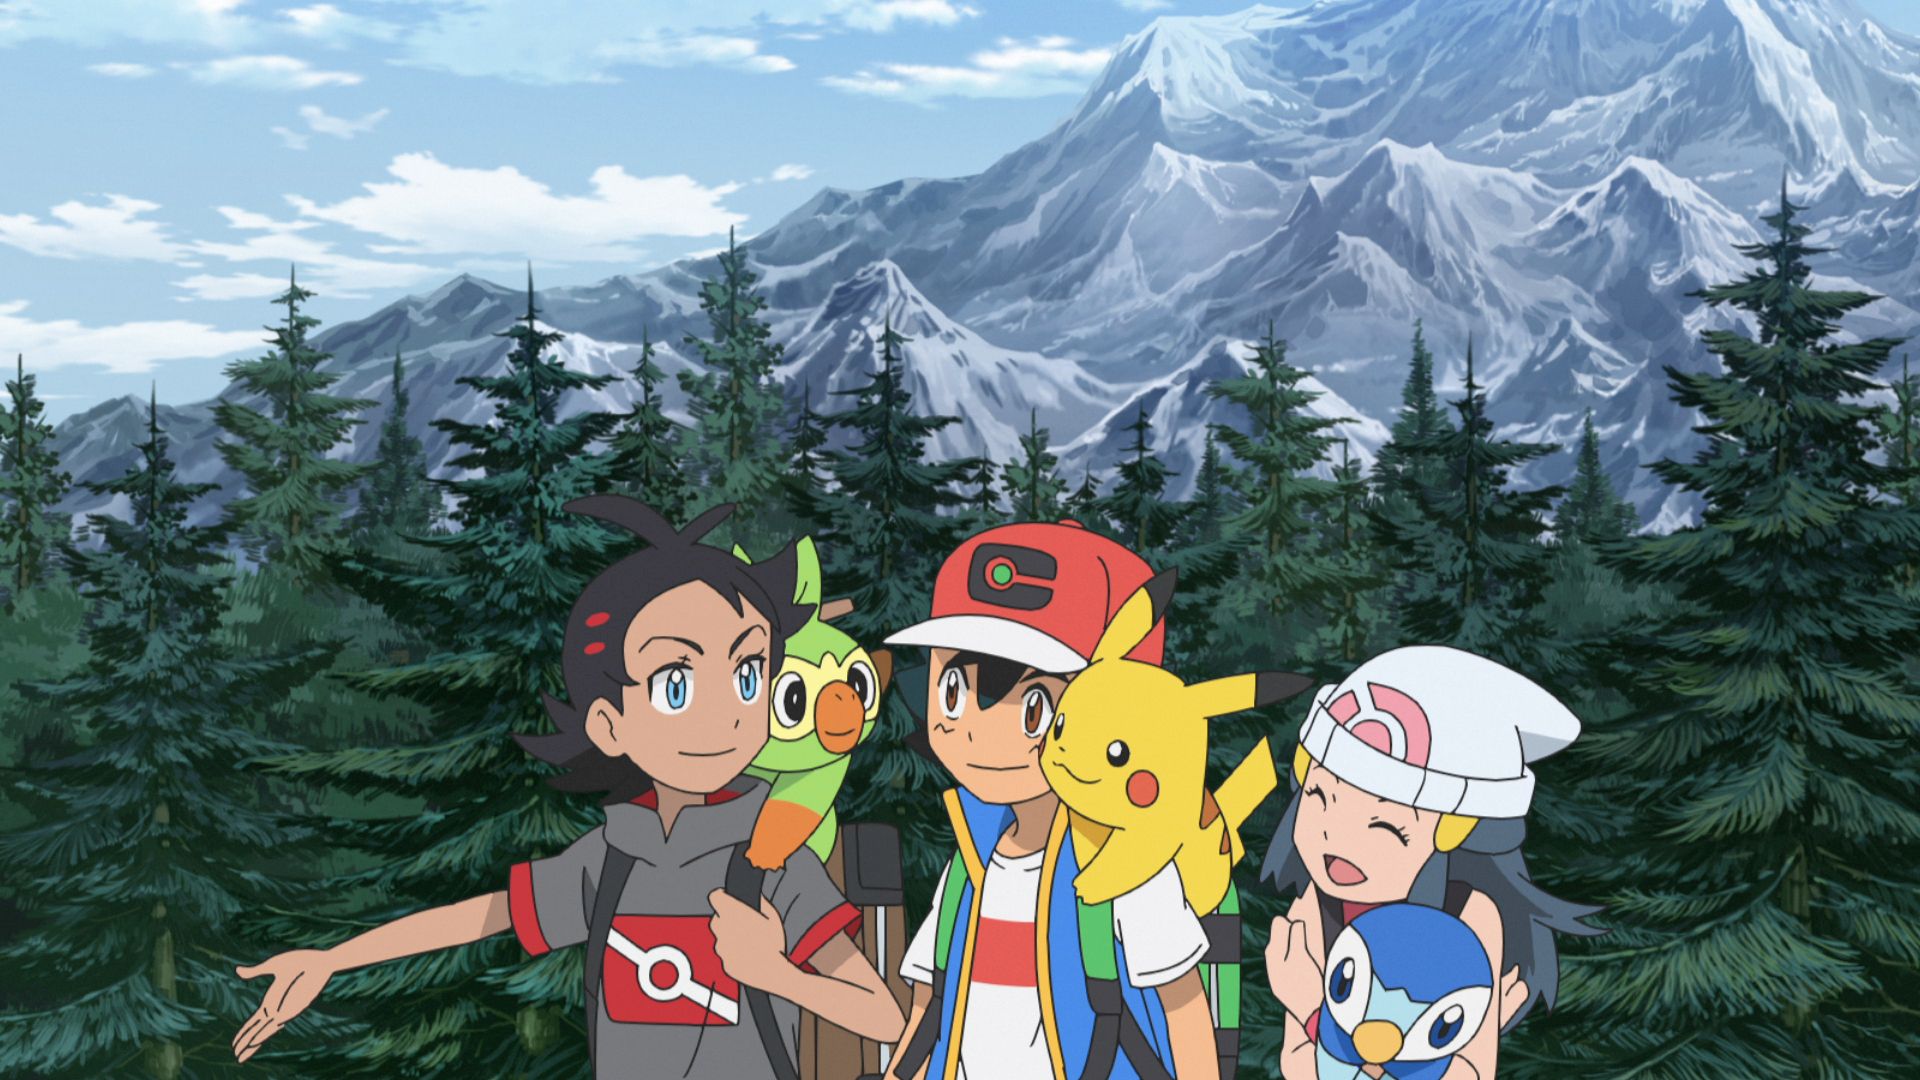 #Pokémon: Die Arceus-Chroniken ist ab sofort auf noch mehr Streaming-Plattformen verfügbar